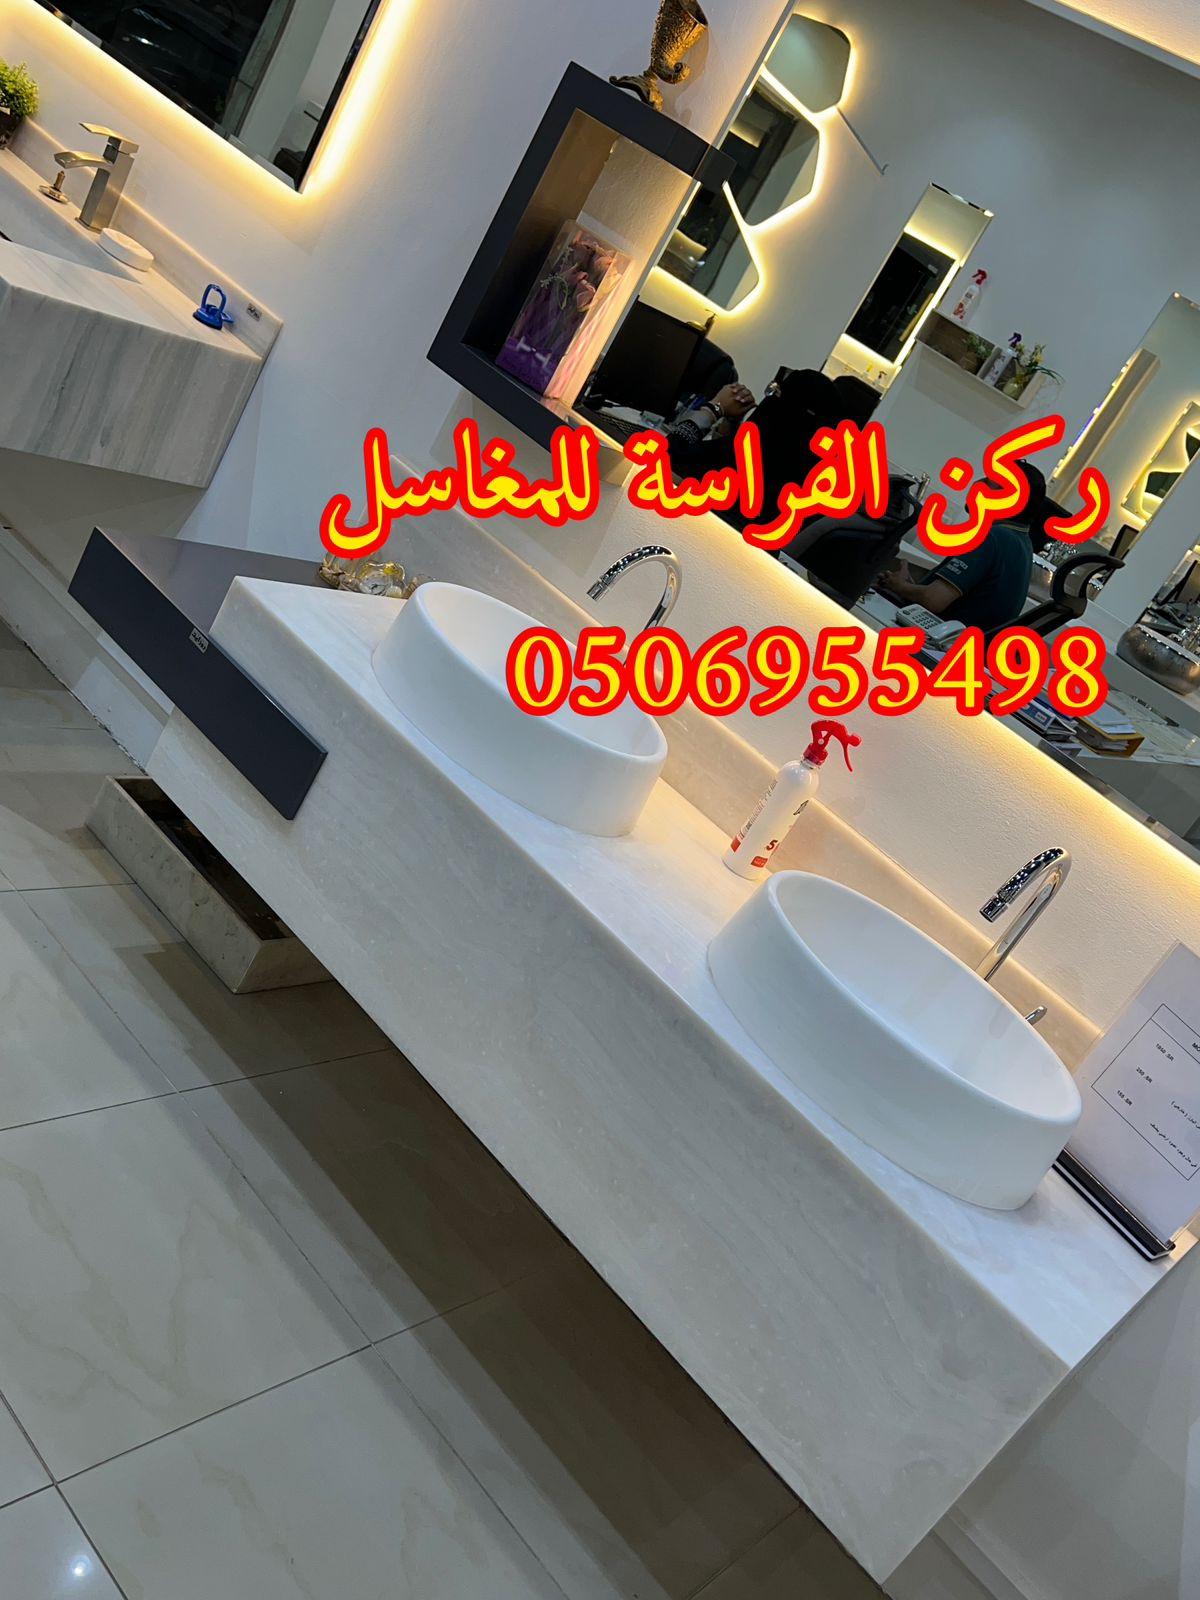 مغاسل حمامات رخام مودرن فخمة في الرياض,0506955498 417722765